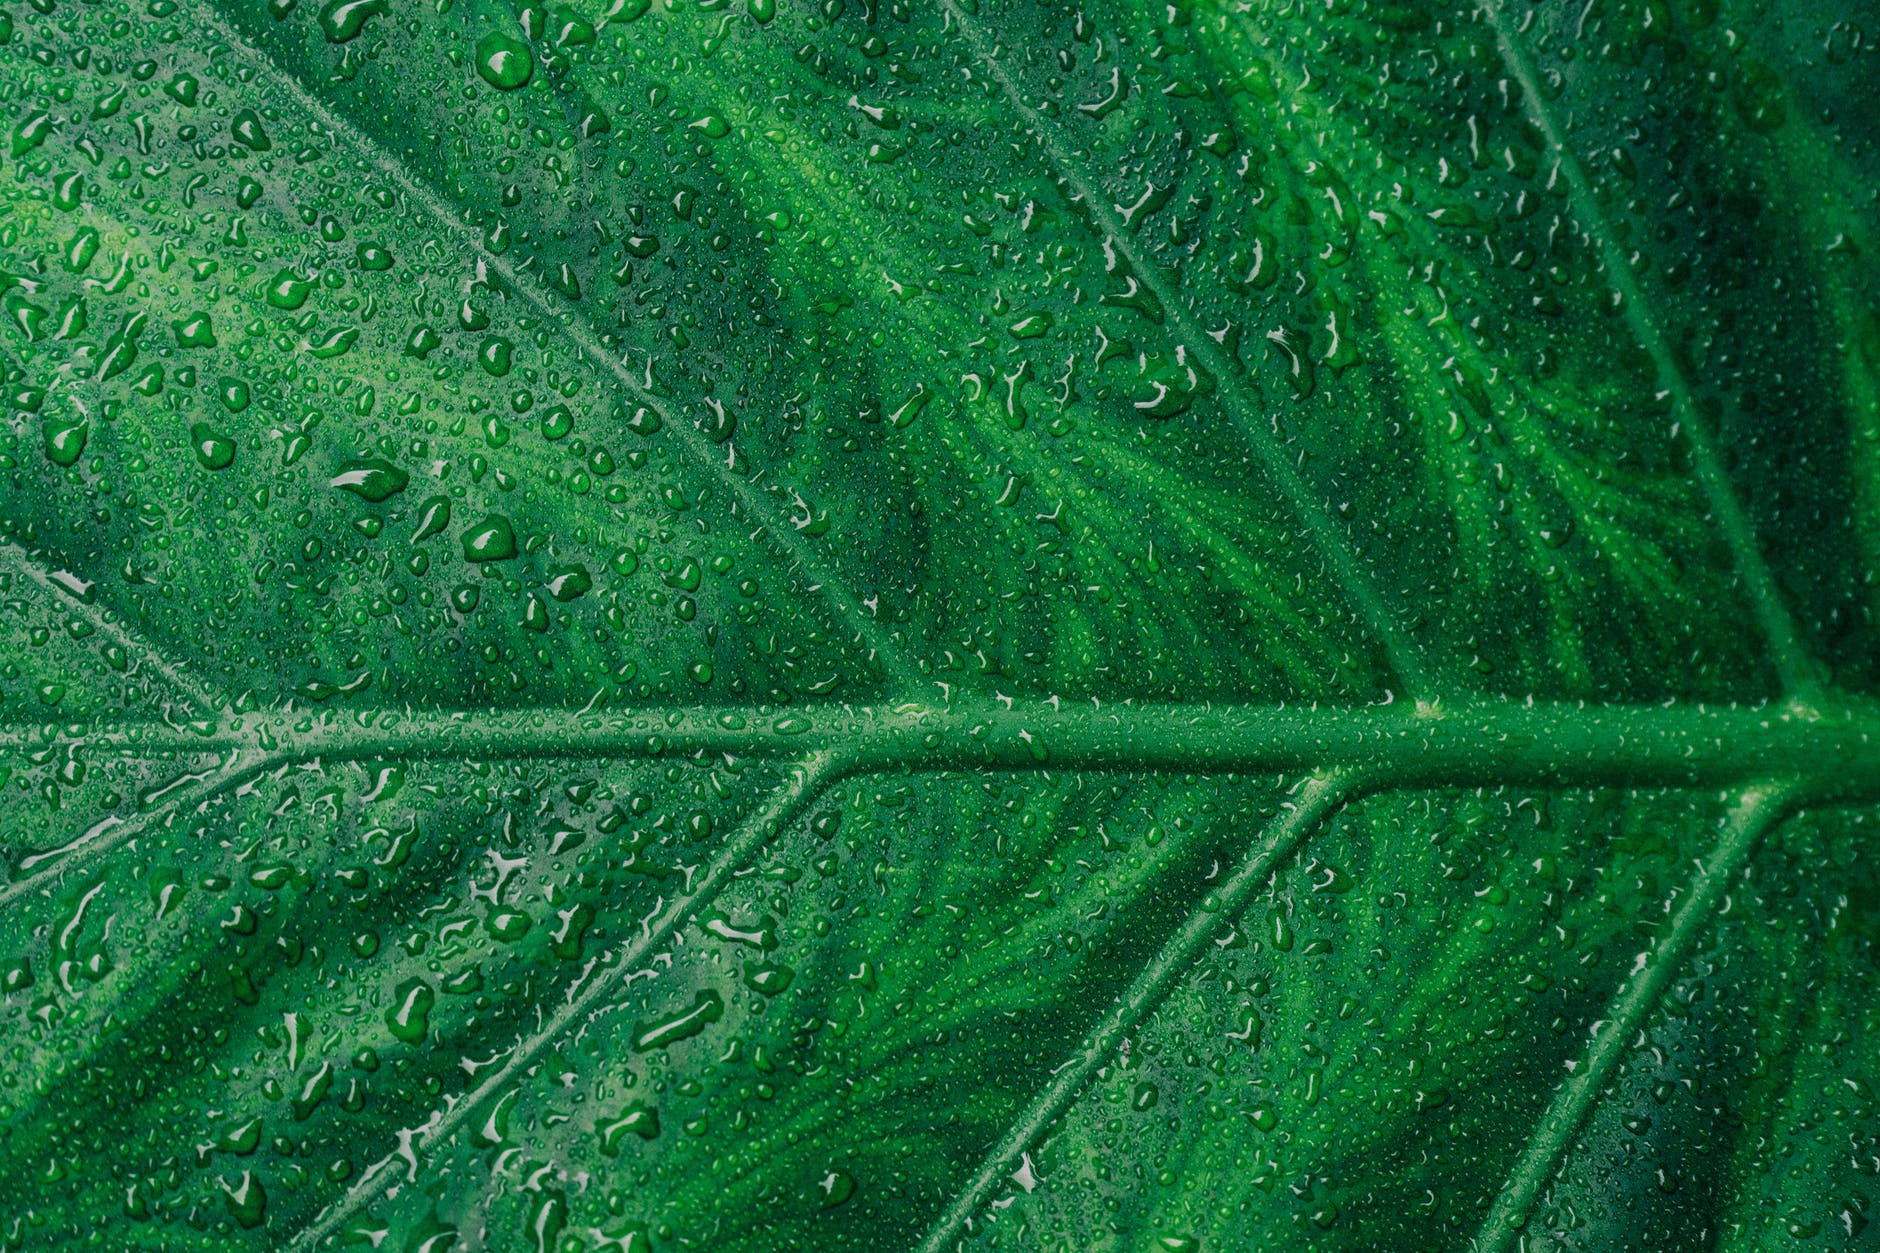 Le pigment vert d'une feuille s'appelle : Chlorophylline, Chloroplaste, ou Chlorophylle